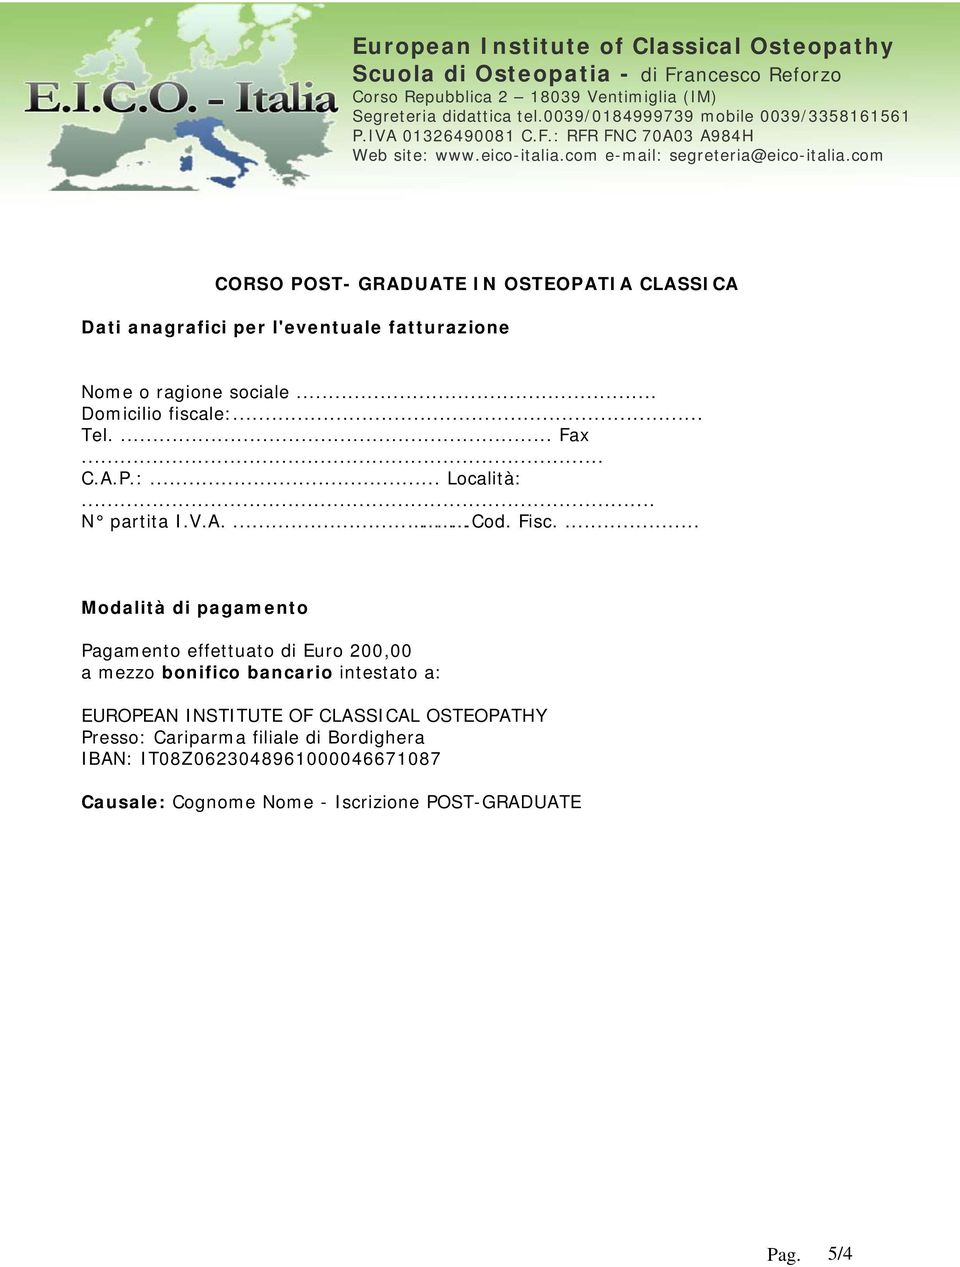 ... Modalità di pagamento Pagamento effettuato di Euro 200,00 a mezzo bonifico bancario intestato a: EUROPEAN INSTITUTE